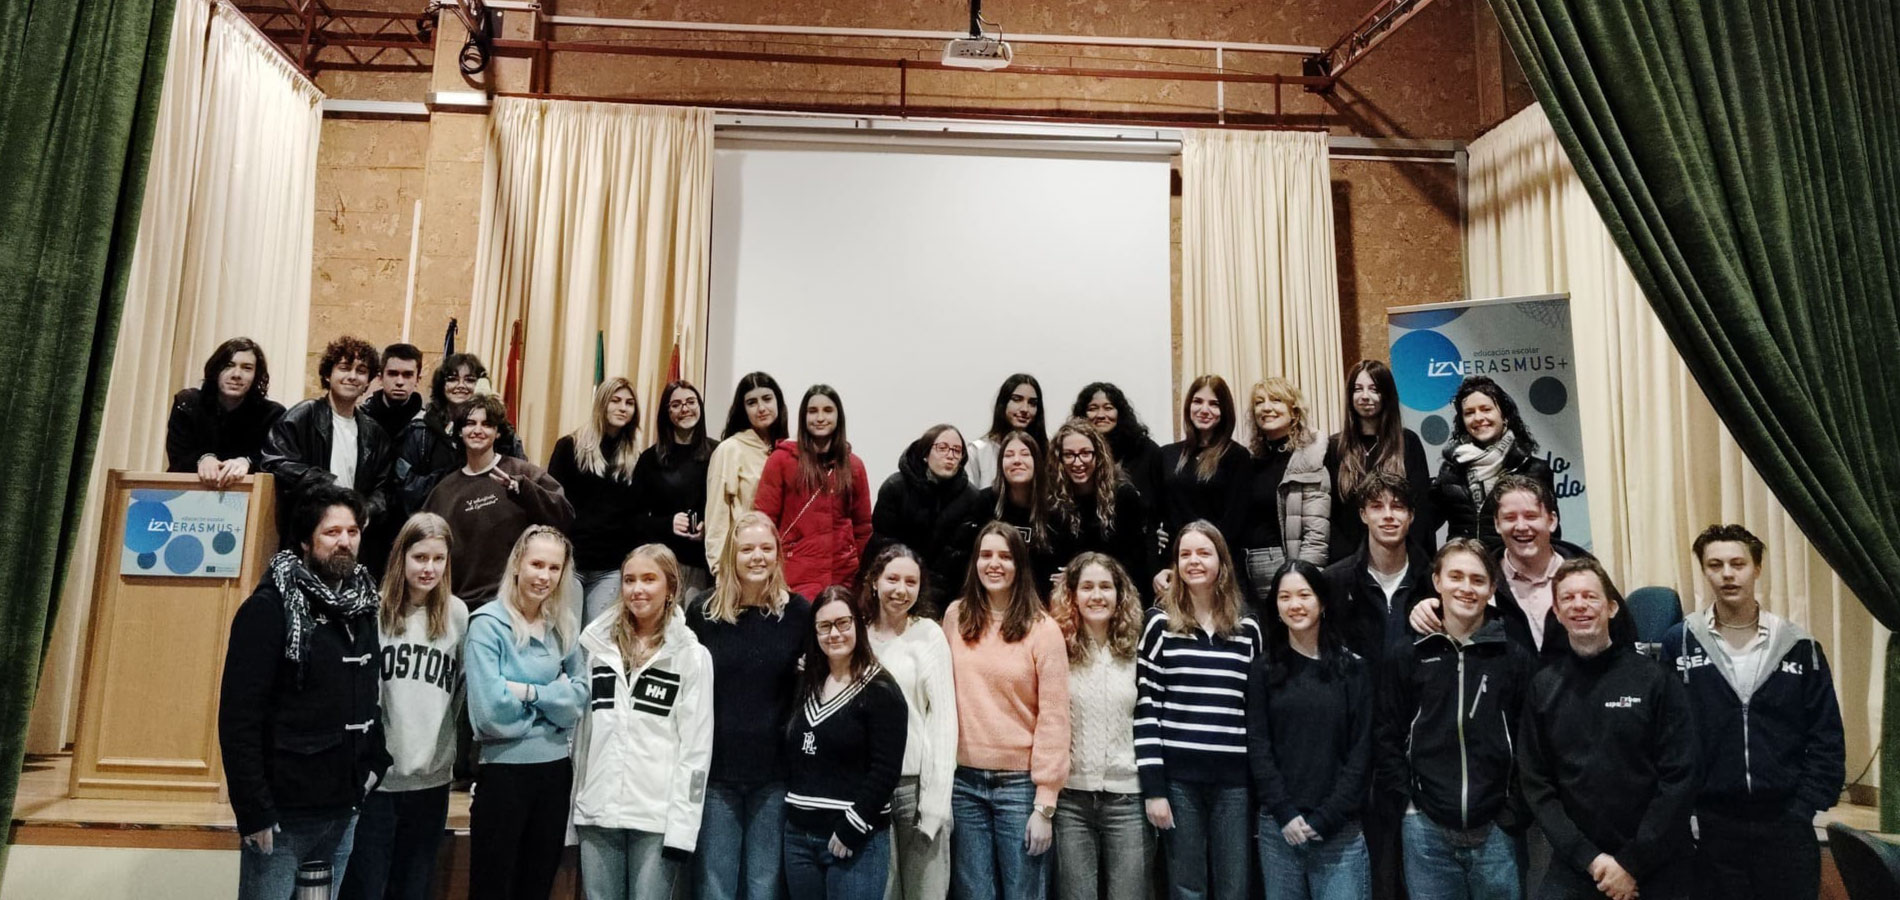 Nos visitan en el centro dos grupos de alumnos y alumnas de Noruega e Italia